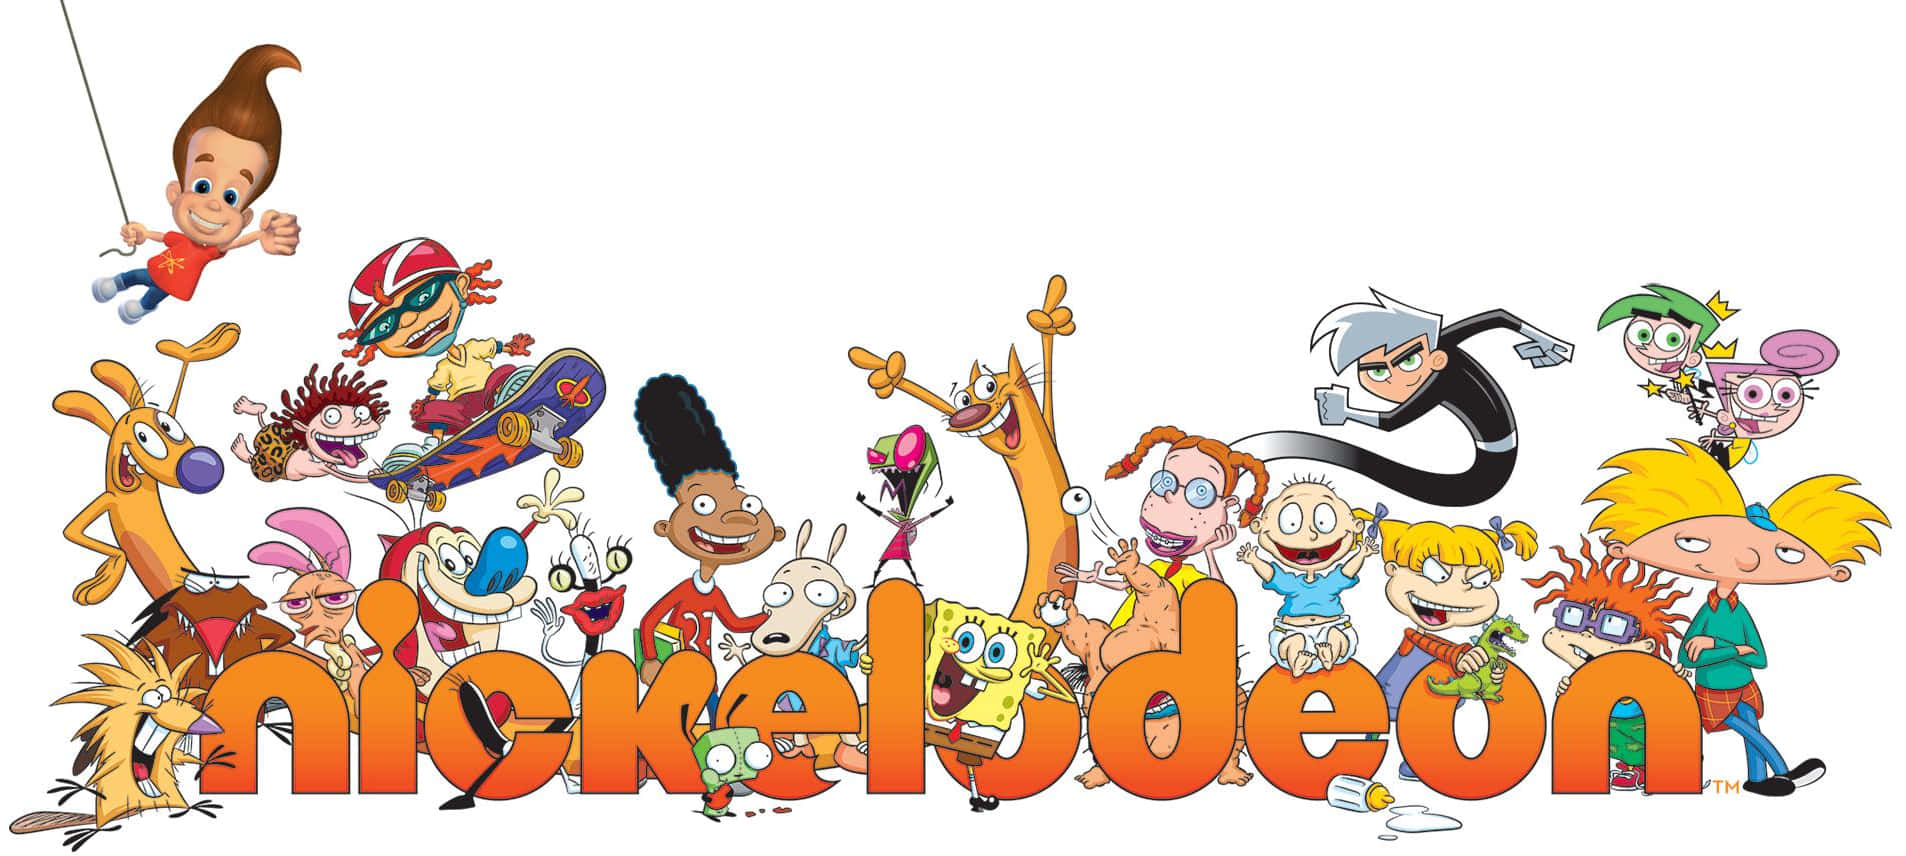 Preparatiper Il Divertimento Senza Fine Con Nickelodeon Sfondo